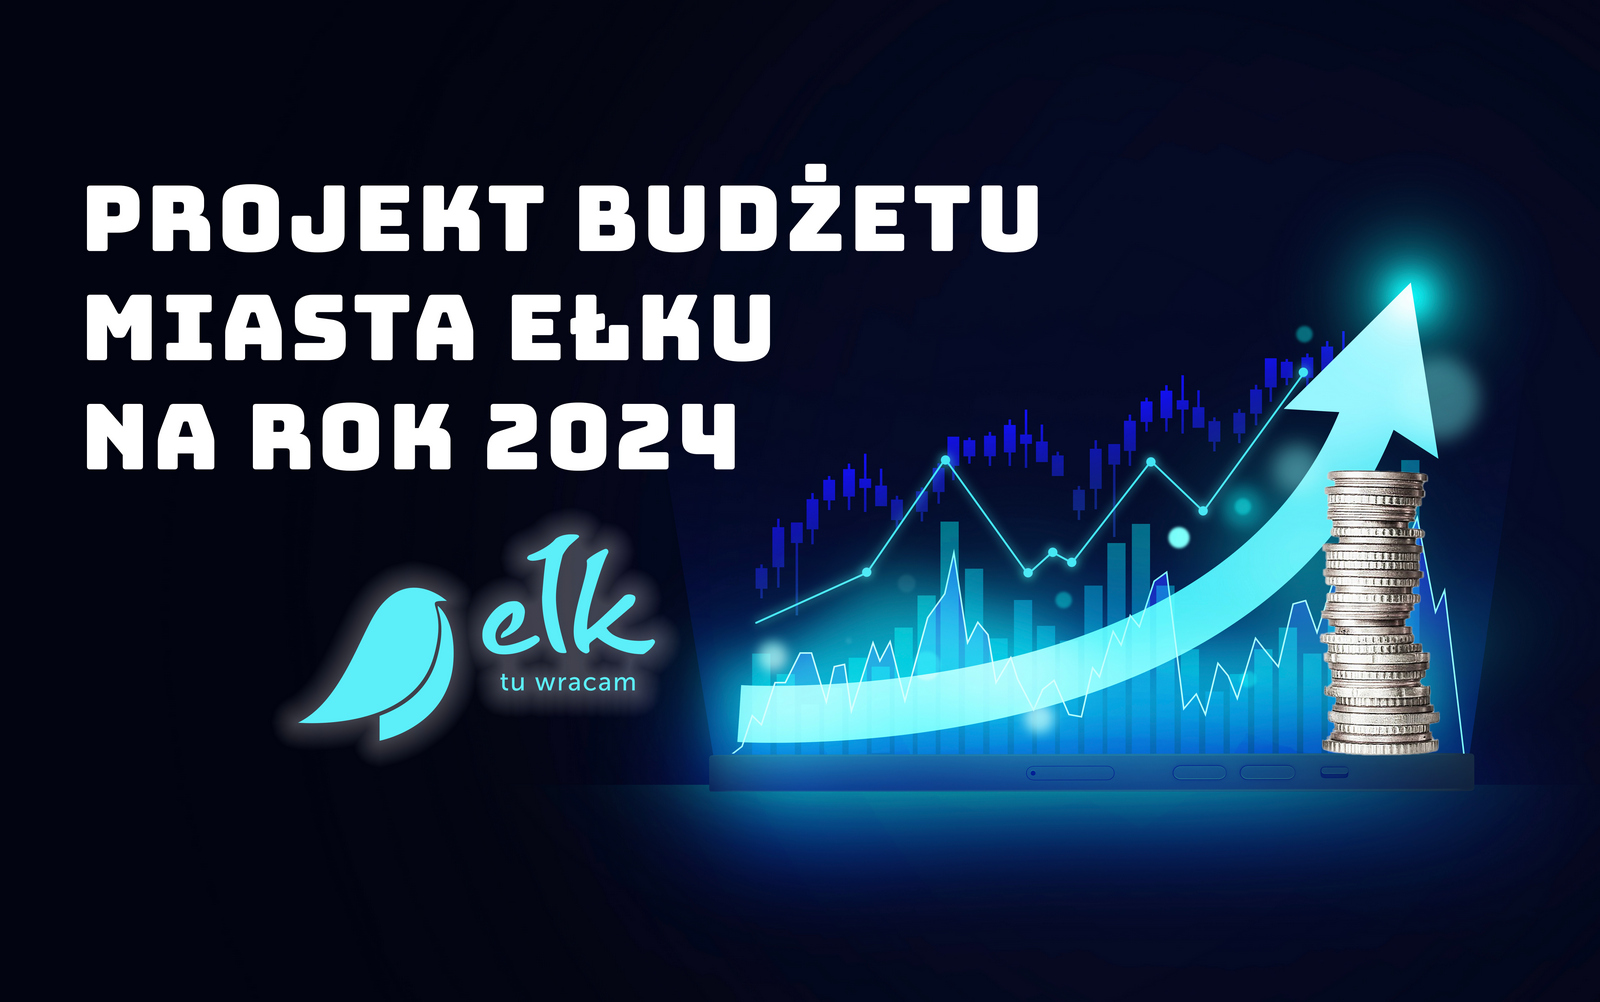 Progetto di bilancio della città di Ełk per il 2024